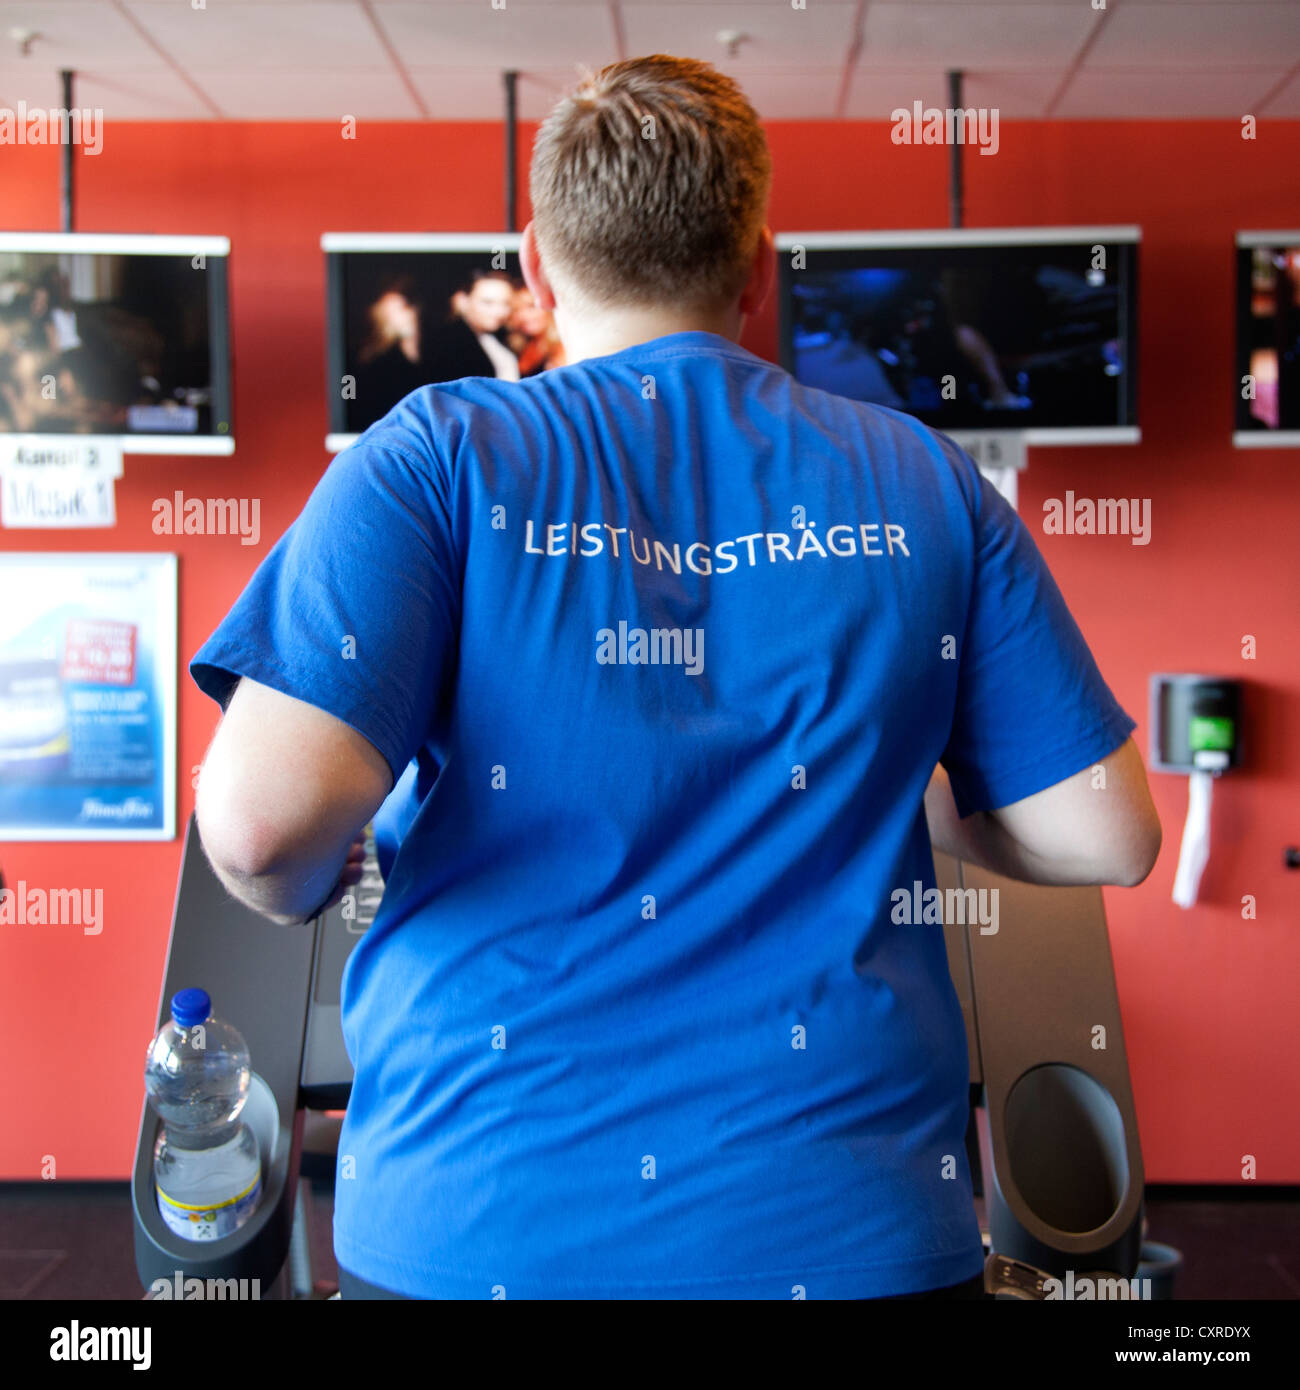 Sportler mit einem t-Shirt bekleidet, Schriftzug "Leistungstraeger", Deutsch für "Top Performer", laufen auf einem Laufband, Fitness-Center Stockfoto